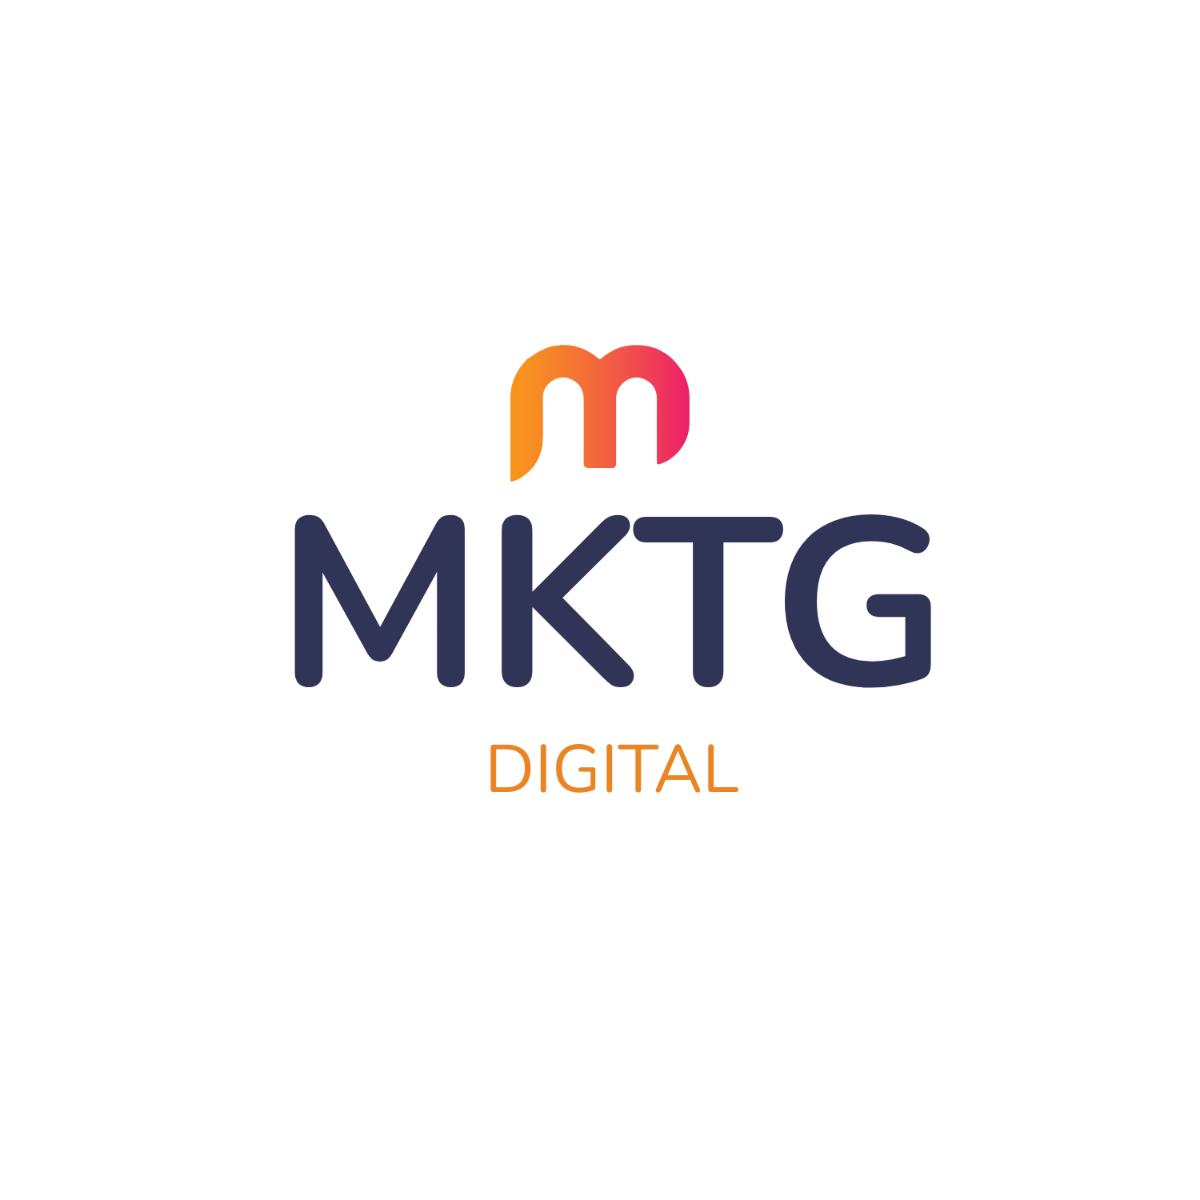 Digital Marketing Agency Pitch Deck Logo